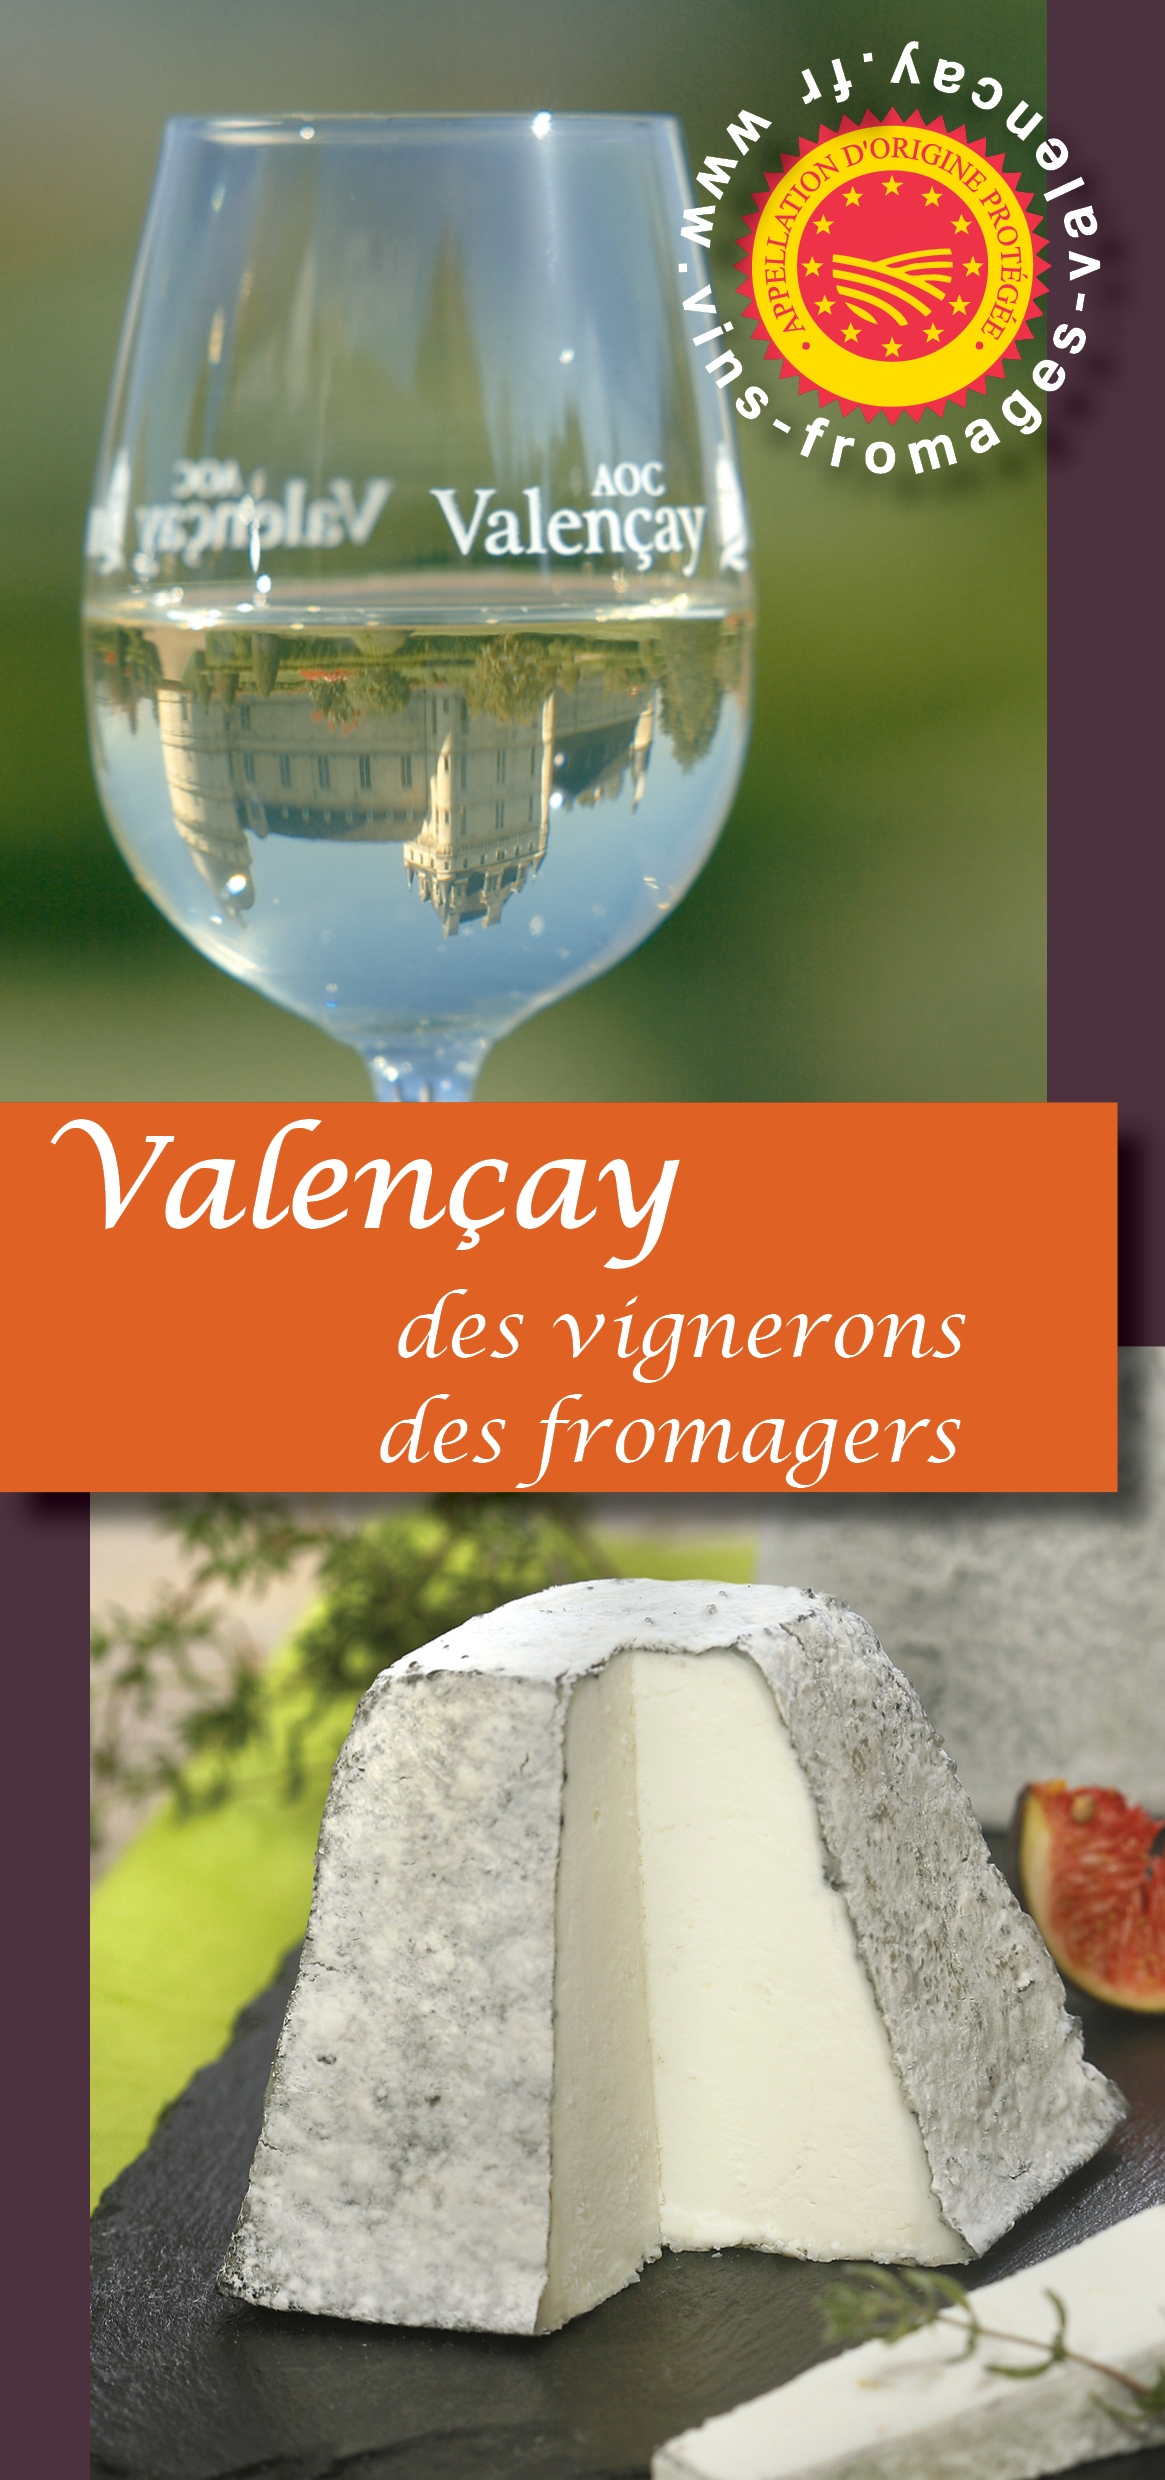 Valençay vin blanc - Maison du fromage et des produits locaux